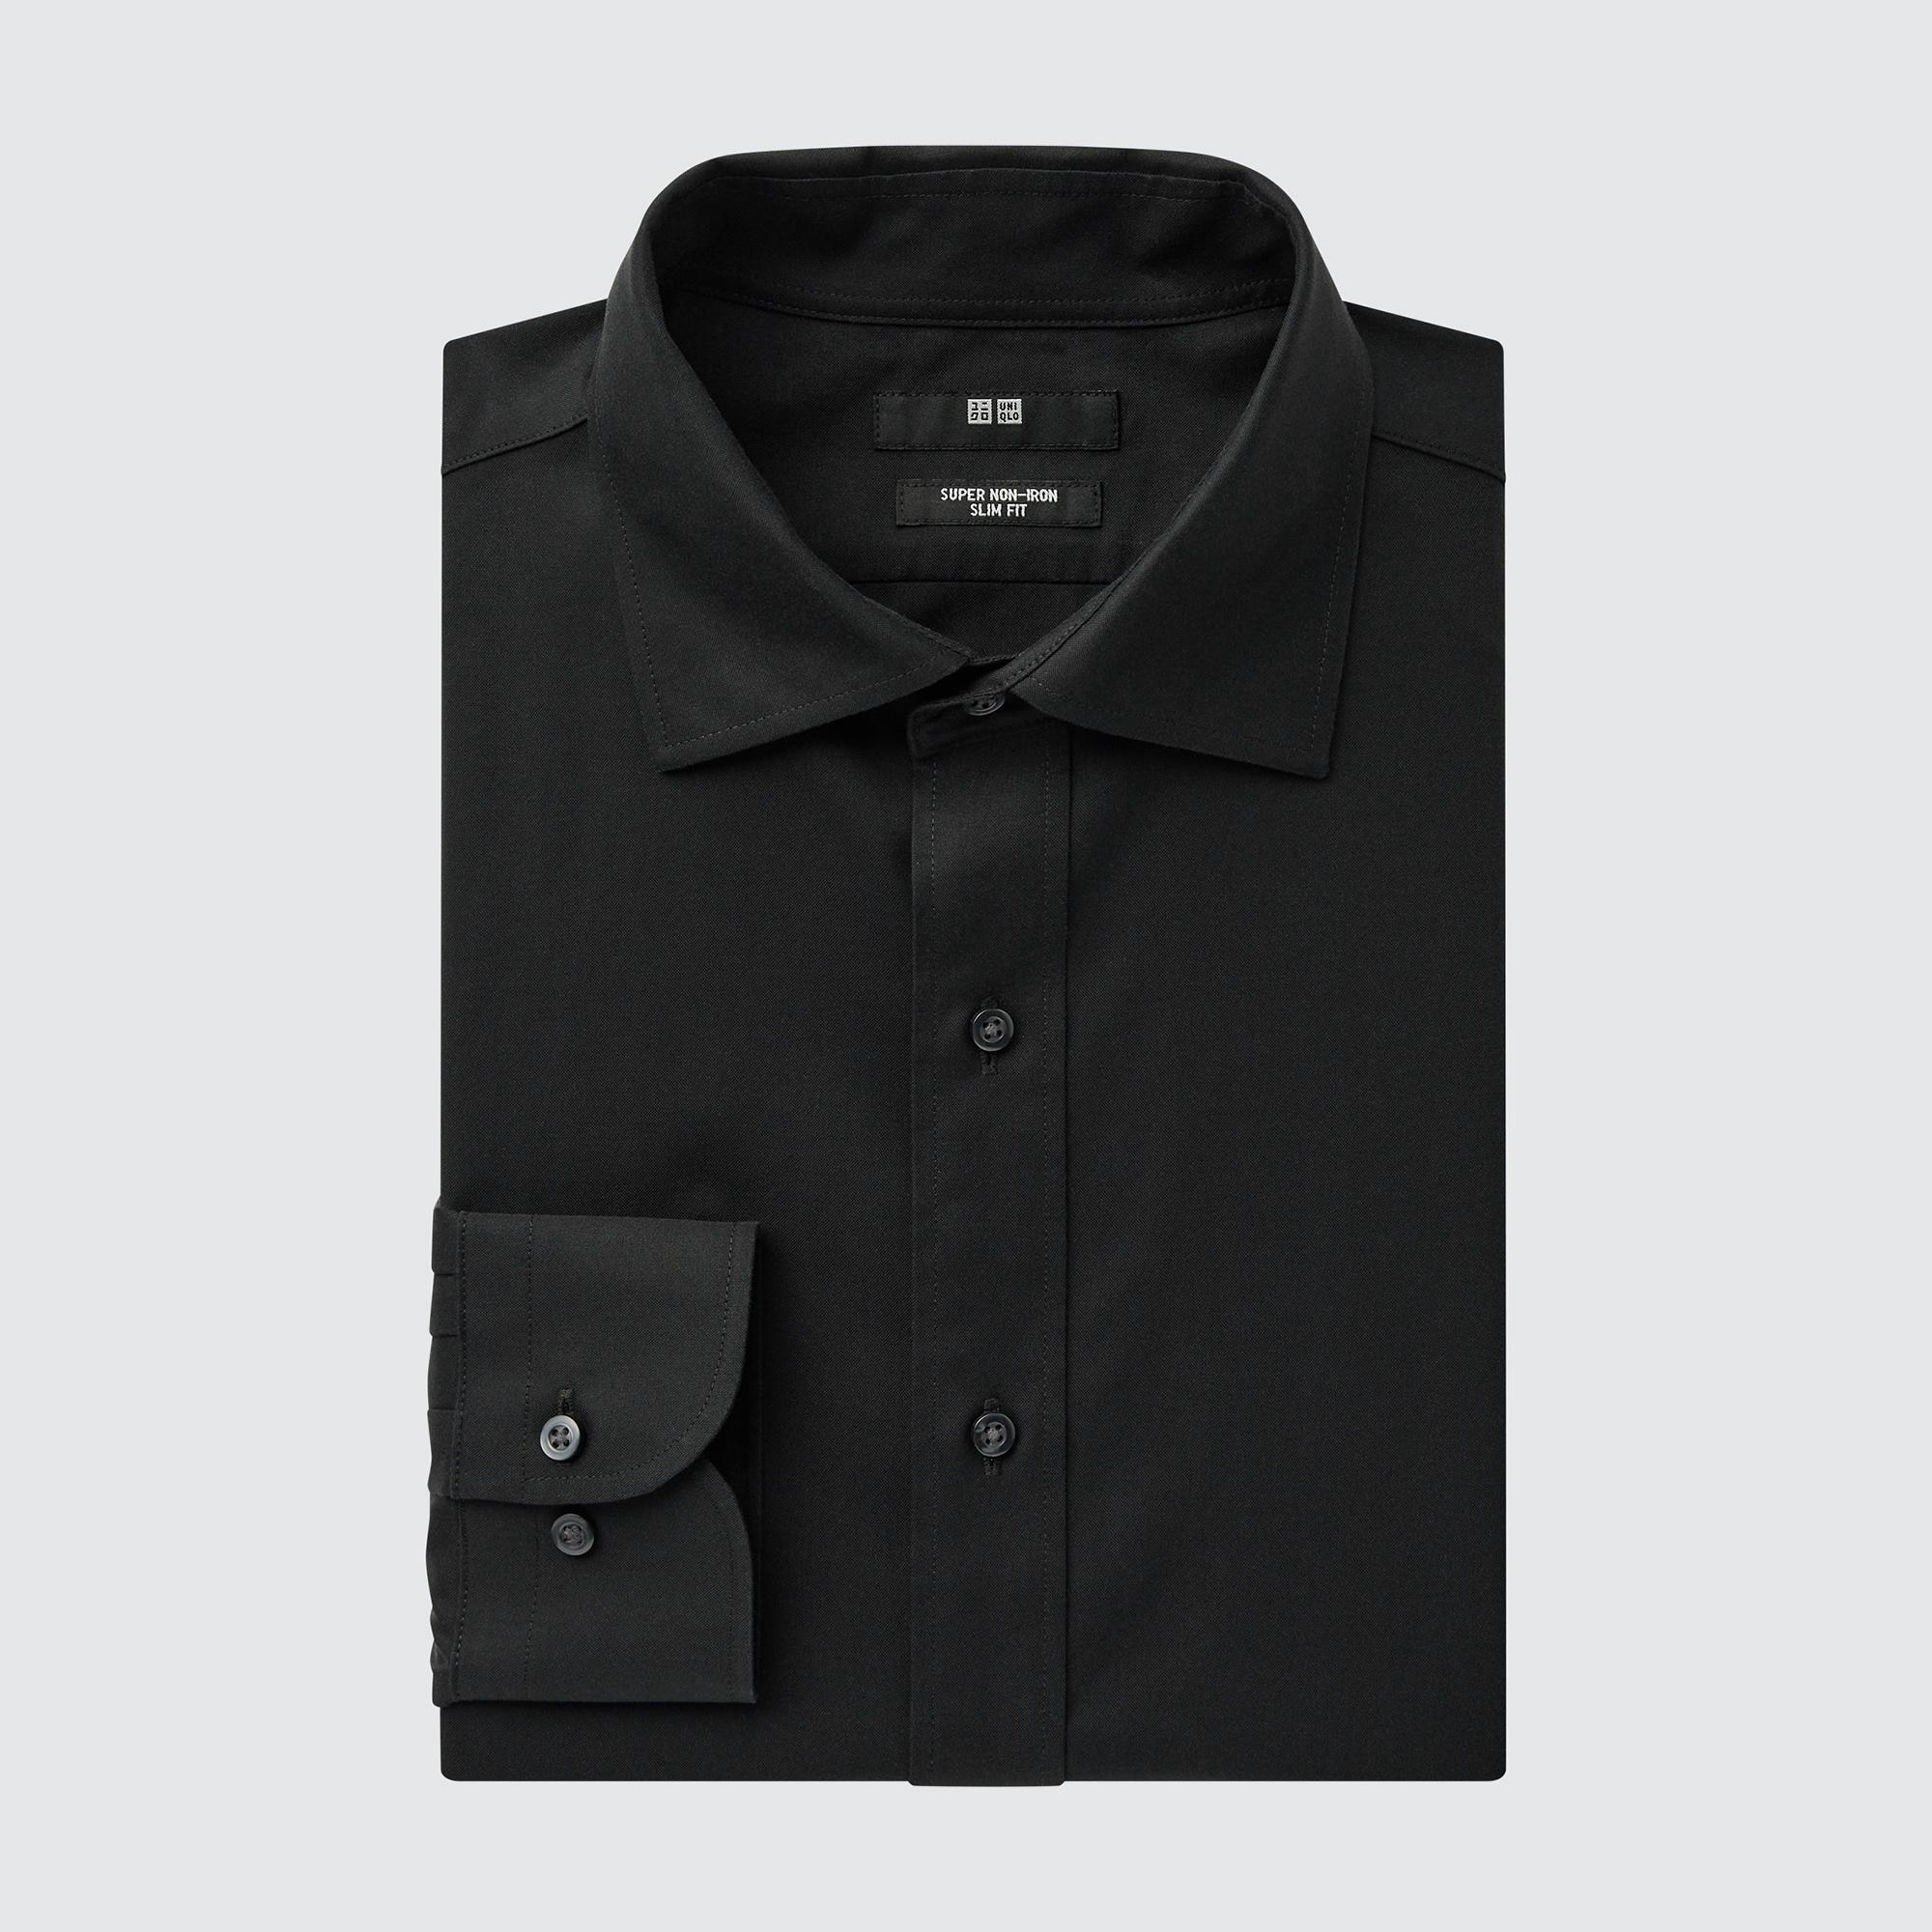 Рубашка мужская UNIQLO 453096COL09 черная XL (доставка из-за рубежа)